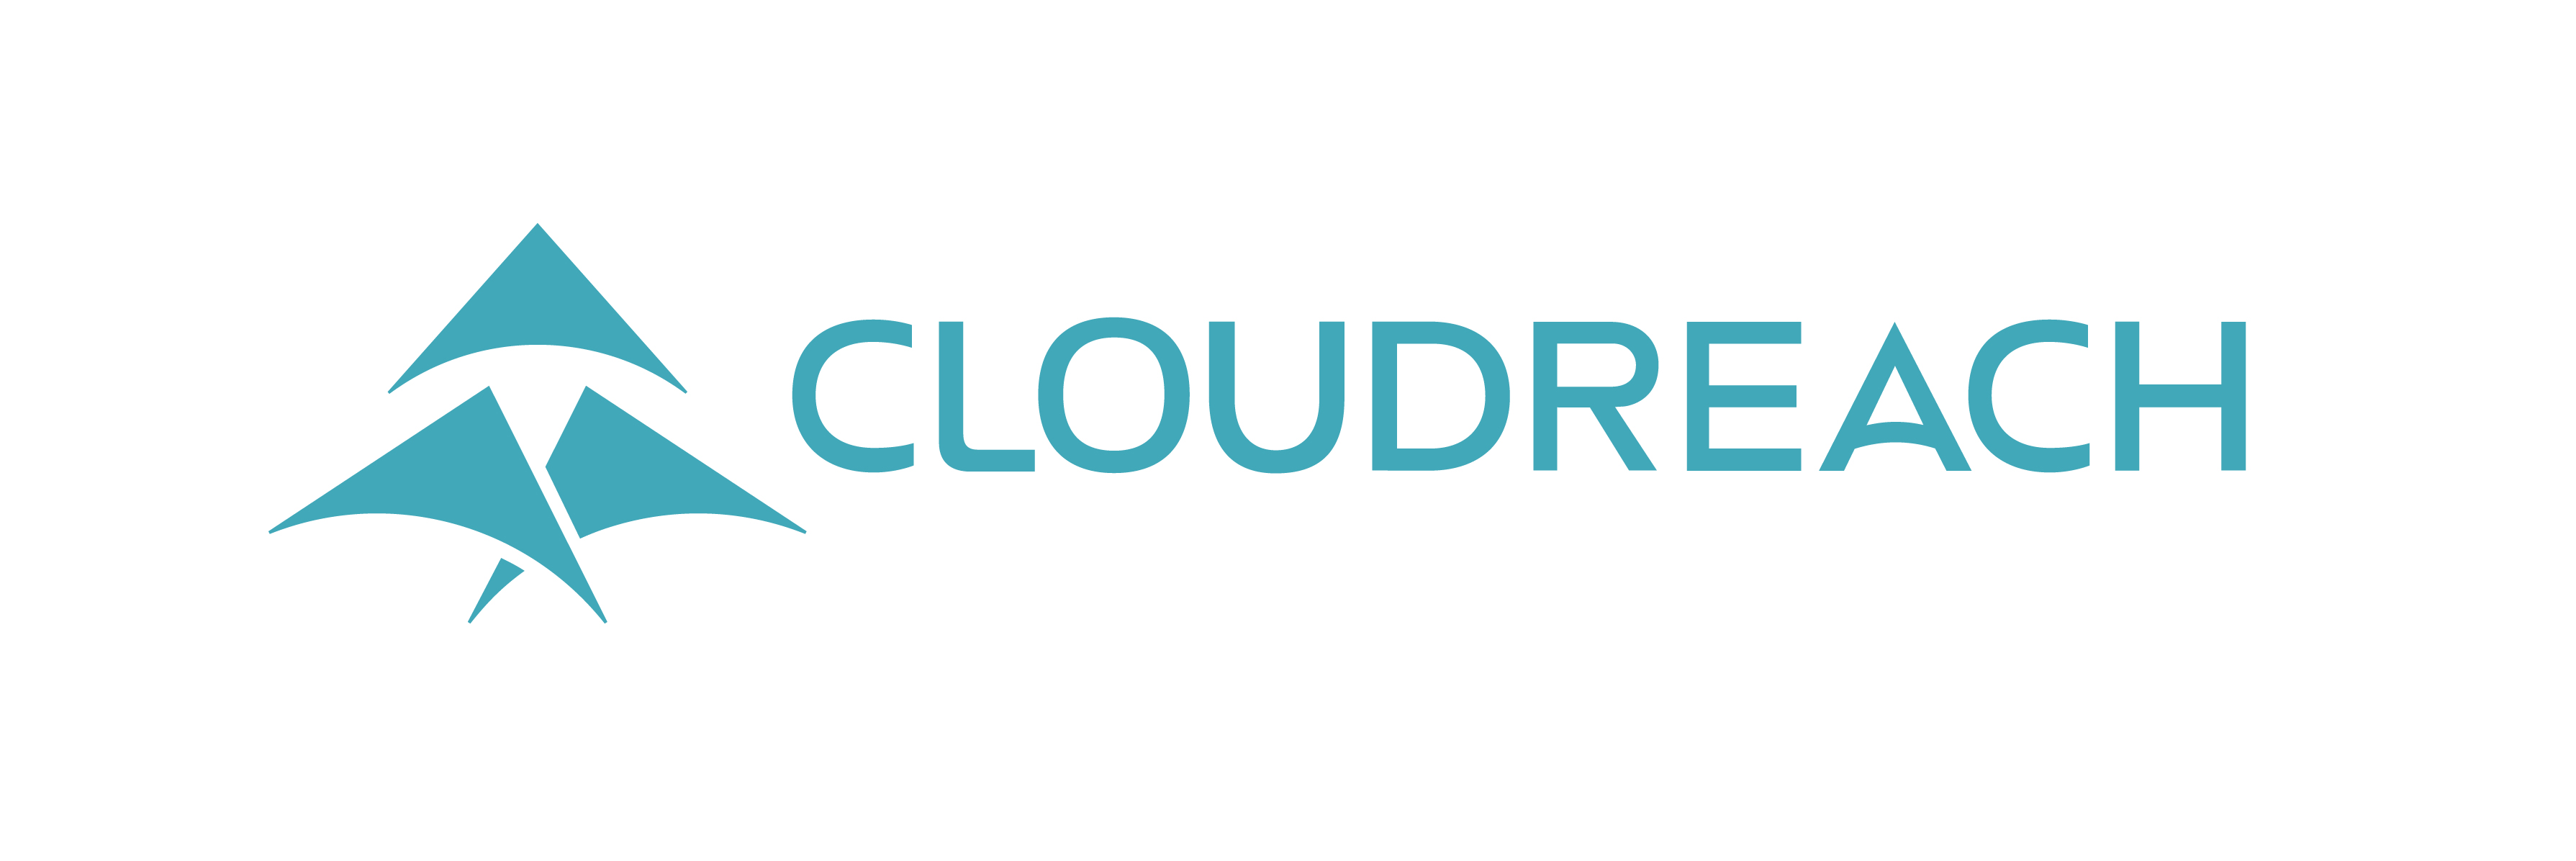 Cloudreach - Cloud Security Summit Sponosor